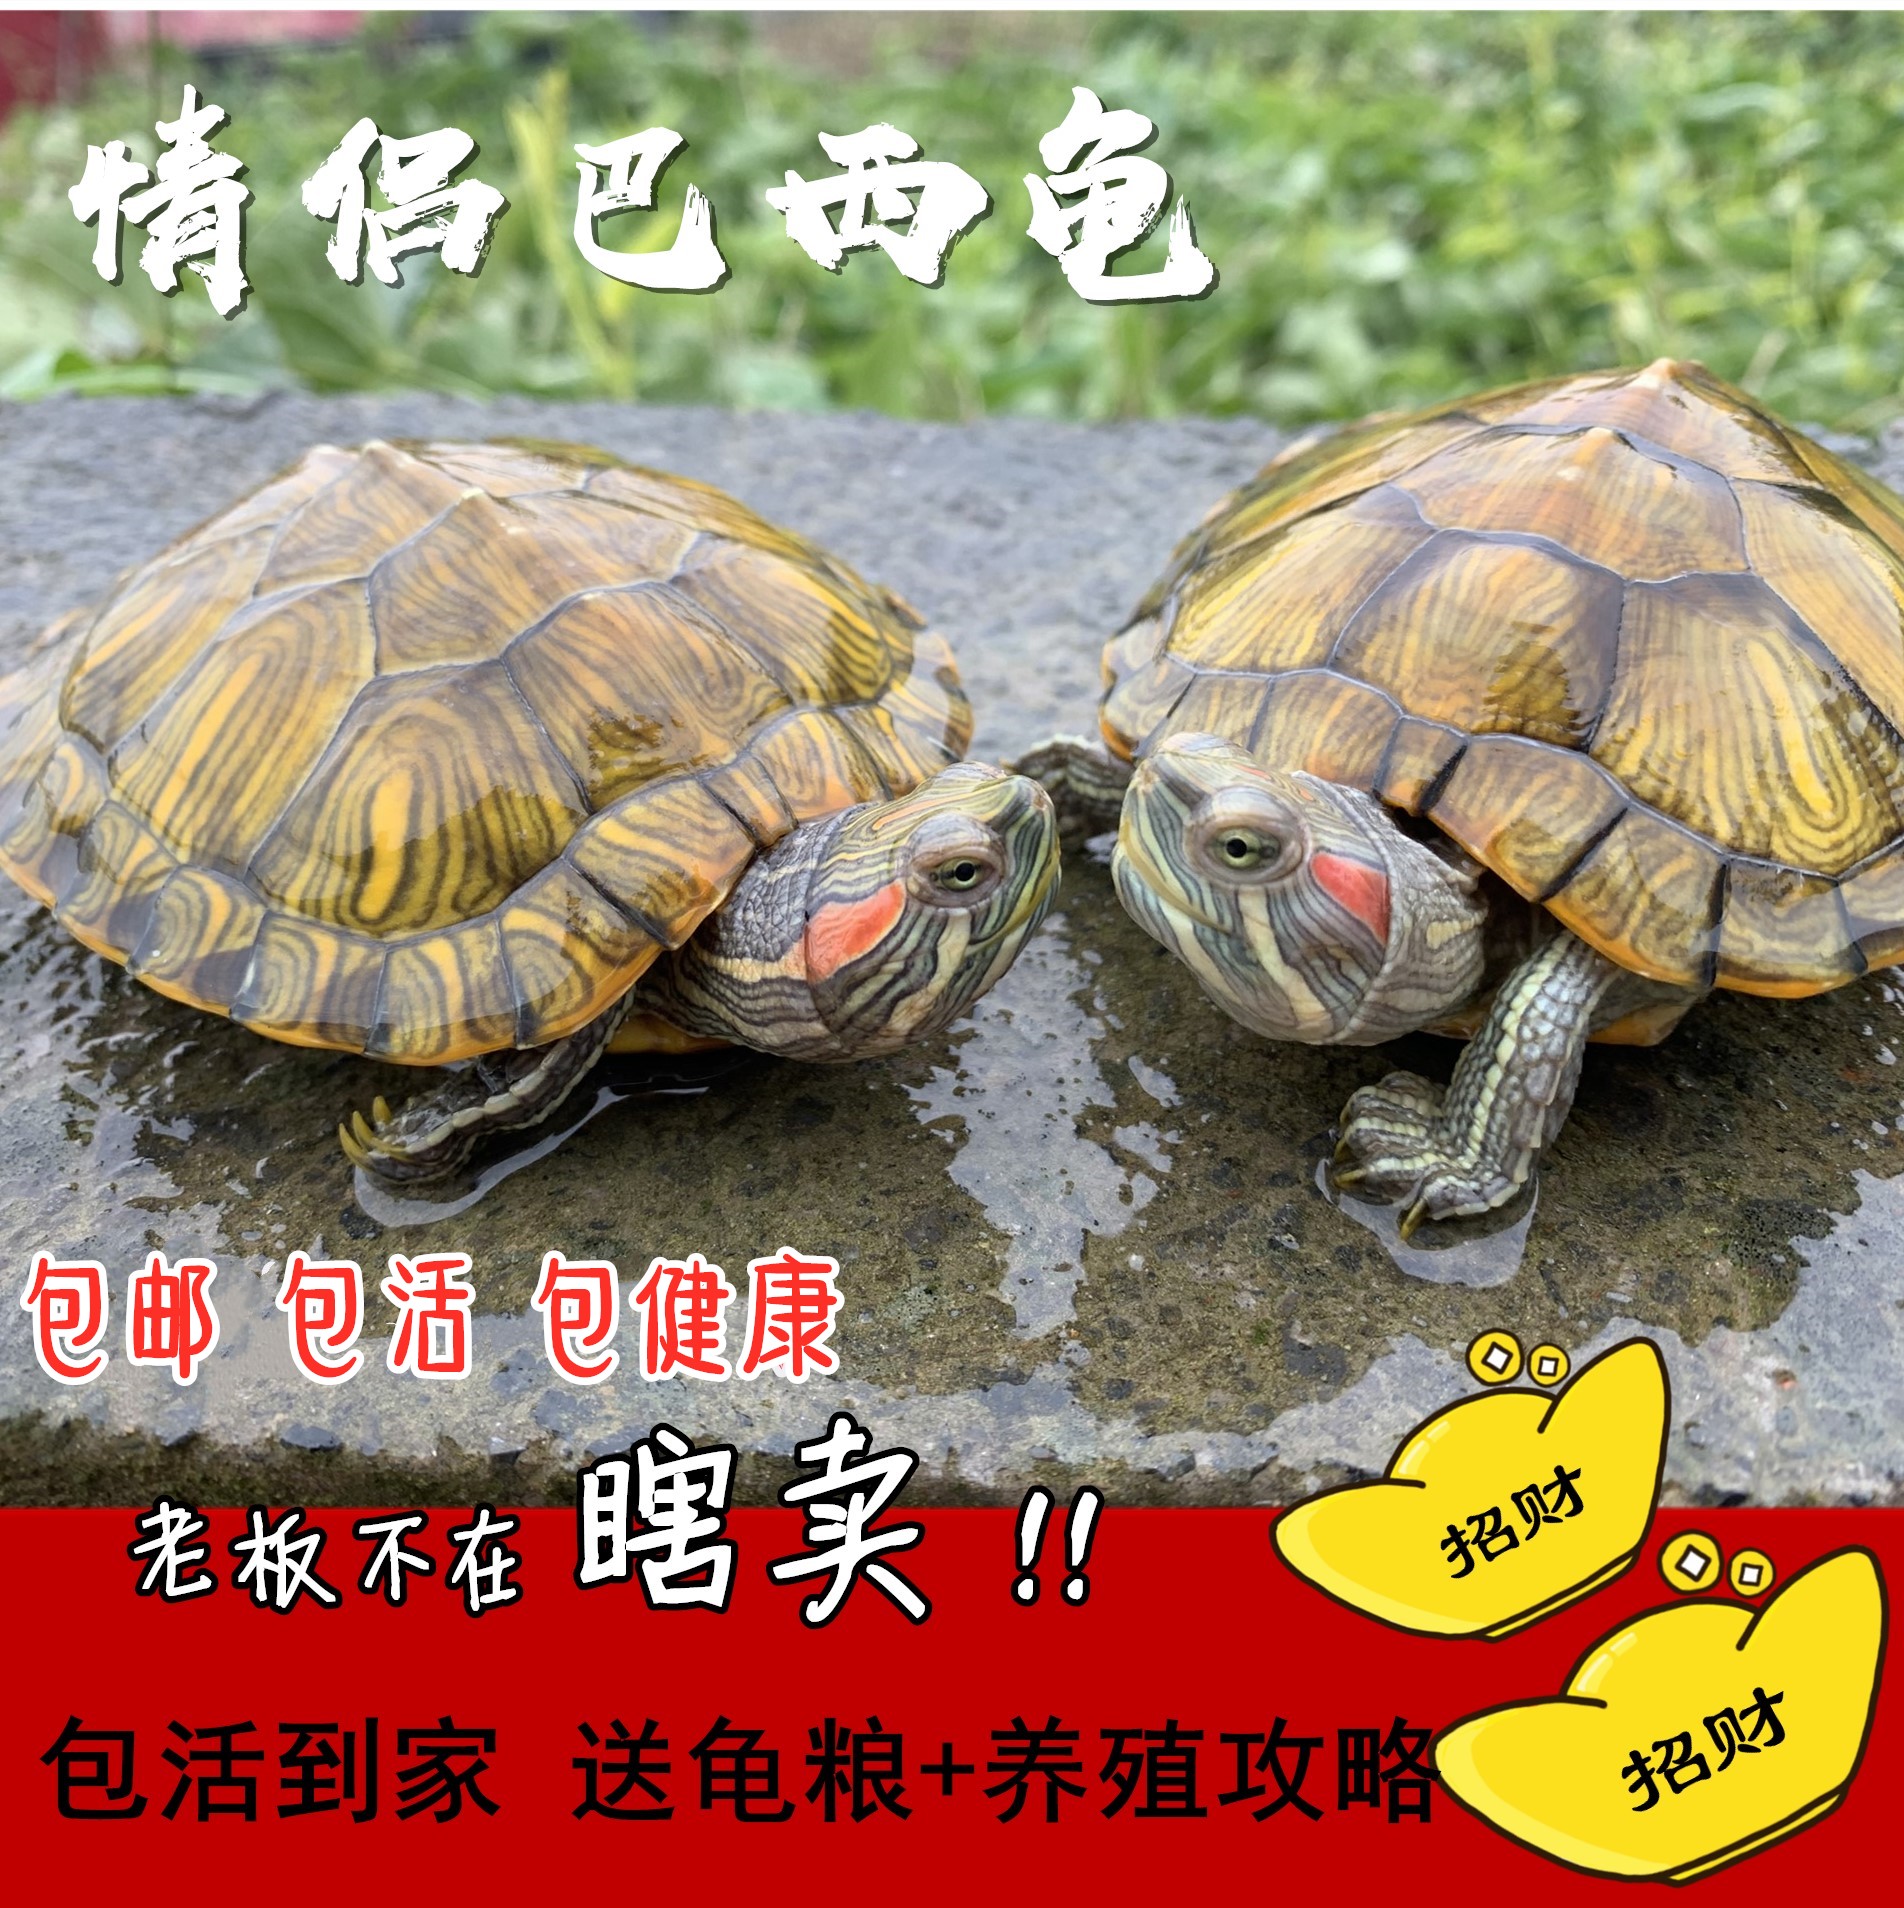 乌龟活体巴西红耳龟 大小彩龟宠物招财黄金龟长寿水龟外塘龟活物